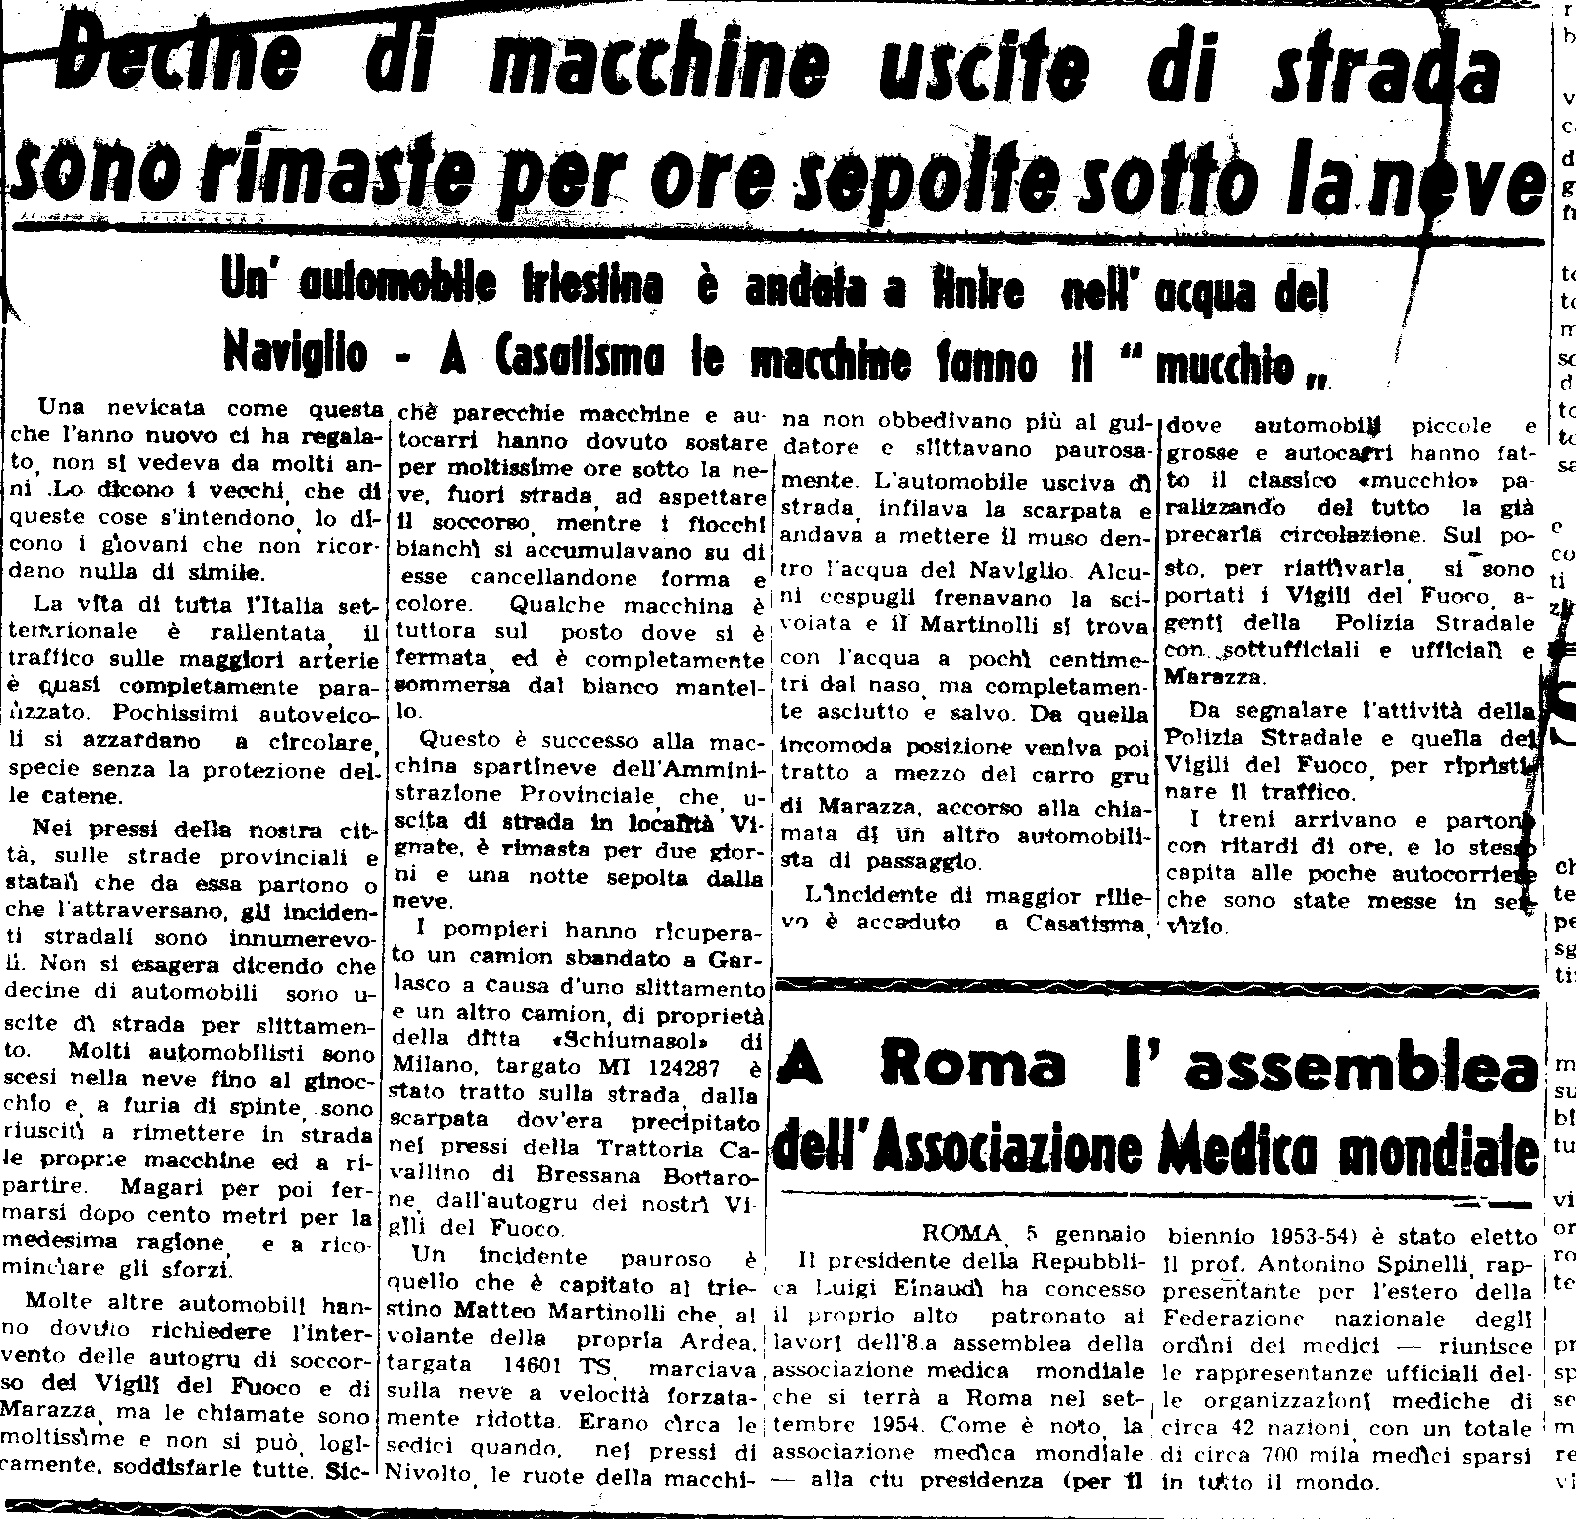 La nevicata del 6 Febbraio 1954 ripresa da un articolo de "La Provincia Pavese"